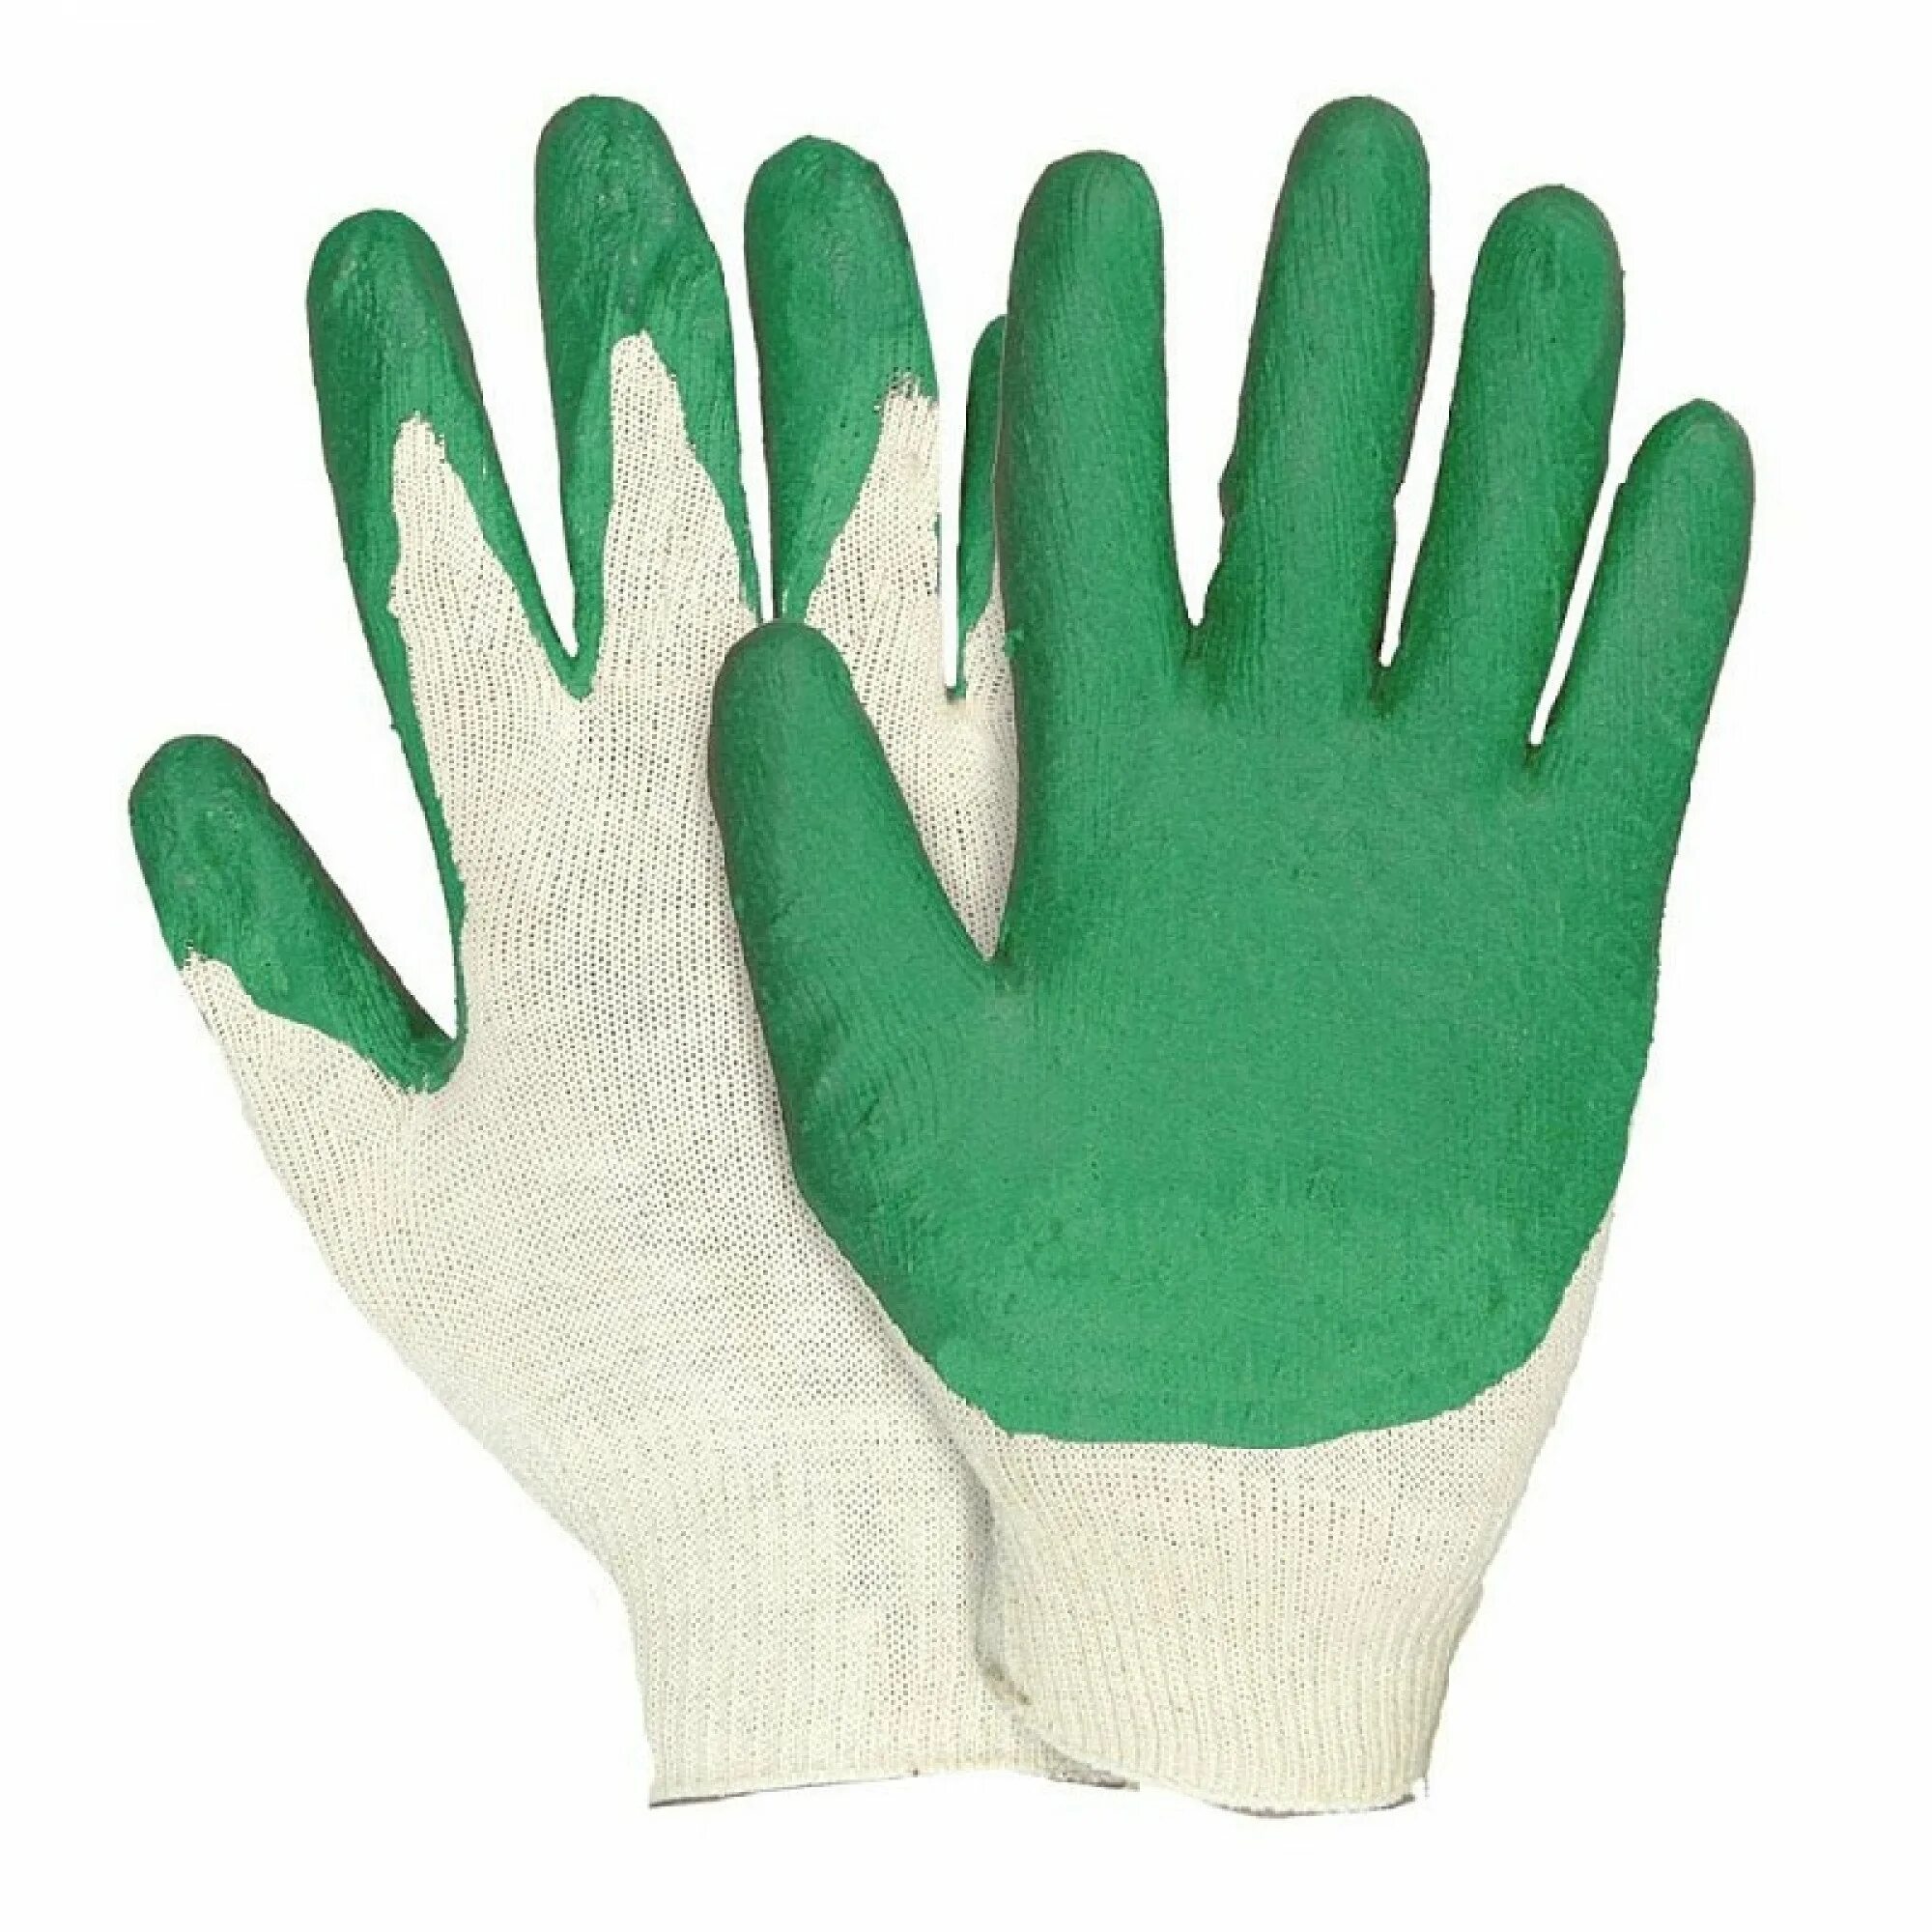 Рабочие перчатки оптом от производителя. Перчатки трикотажные с 2-м латексным обливом зеленые. Перчатки с латексным обливом 10 пар. Перчатки трикотажн. Обливные (ж) (10пар/уп). Перчатки трикотажные с 2-ым латексным обливом (зеленые) уп.300 пар (с).